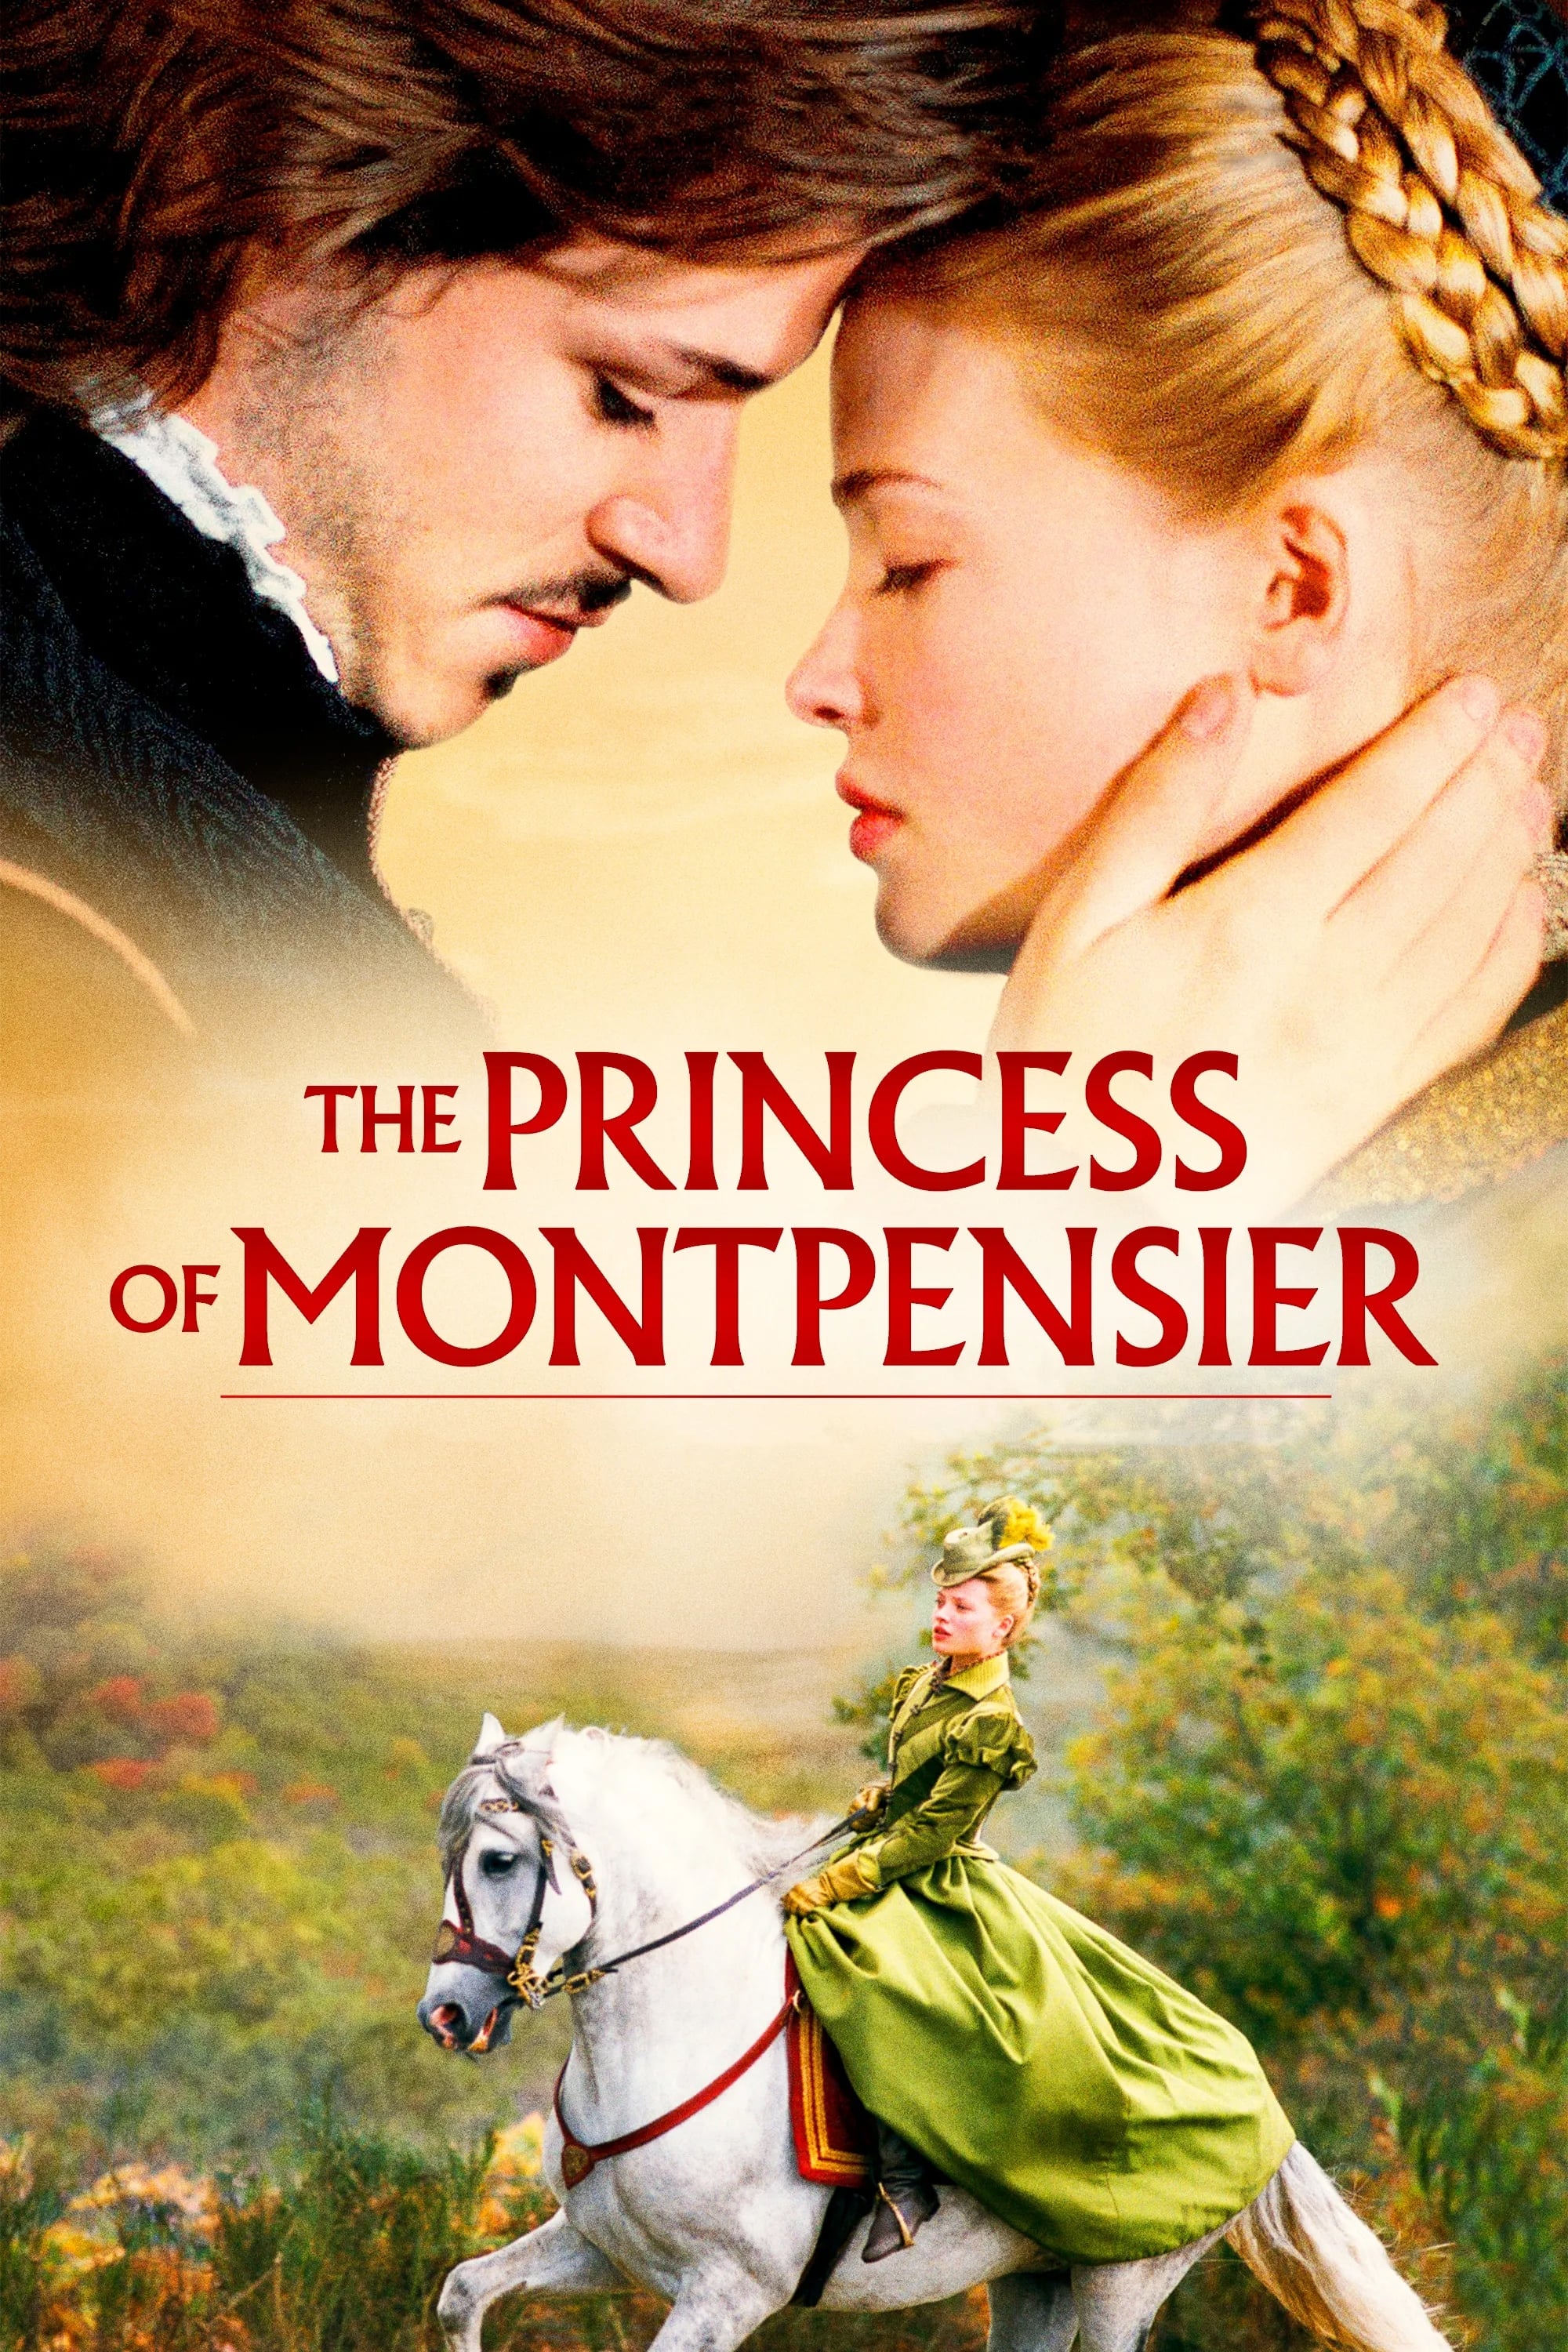 La princesa de Montpensier (2010)